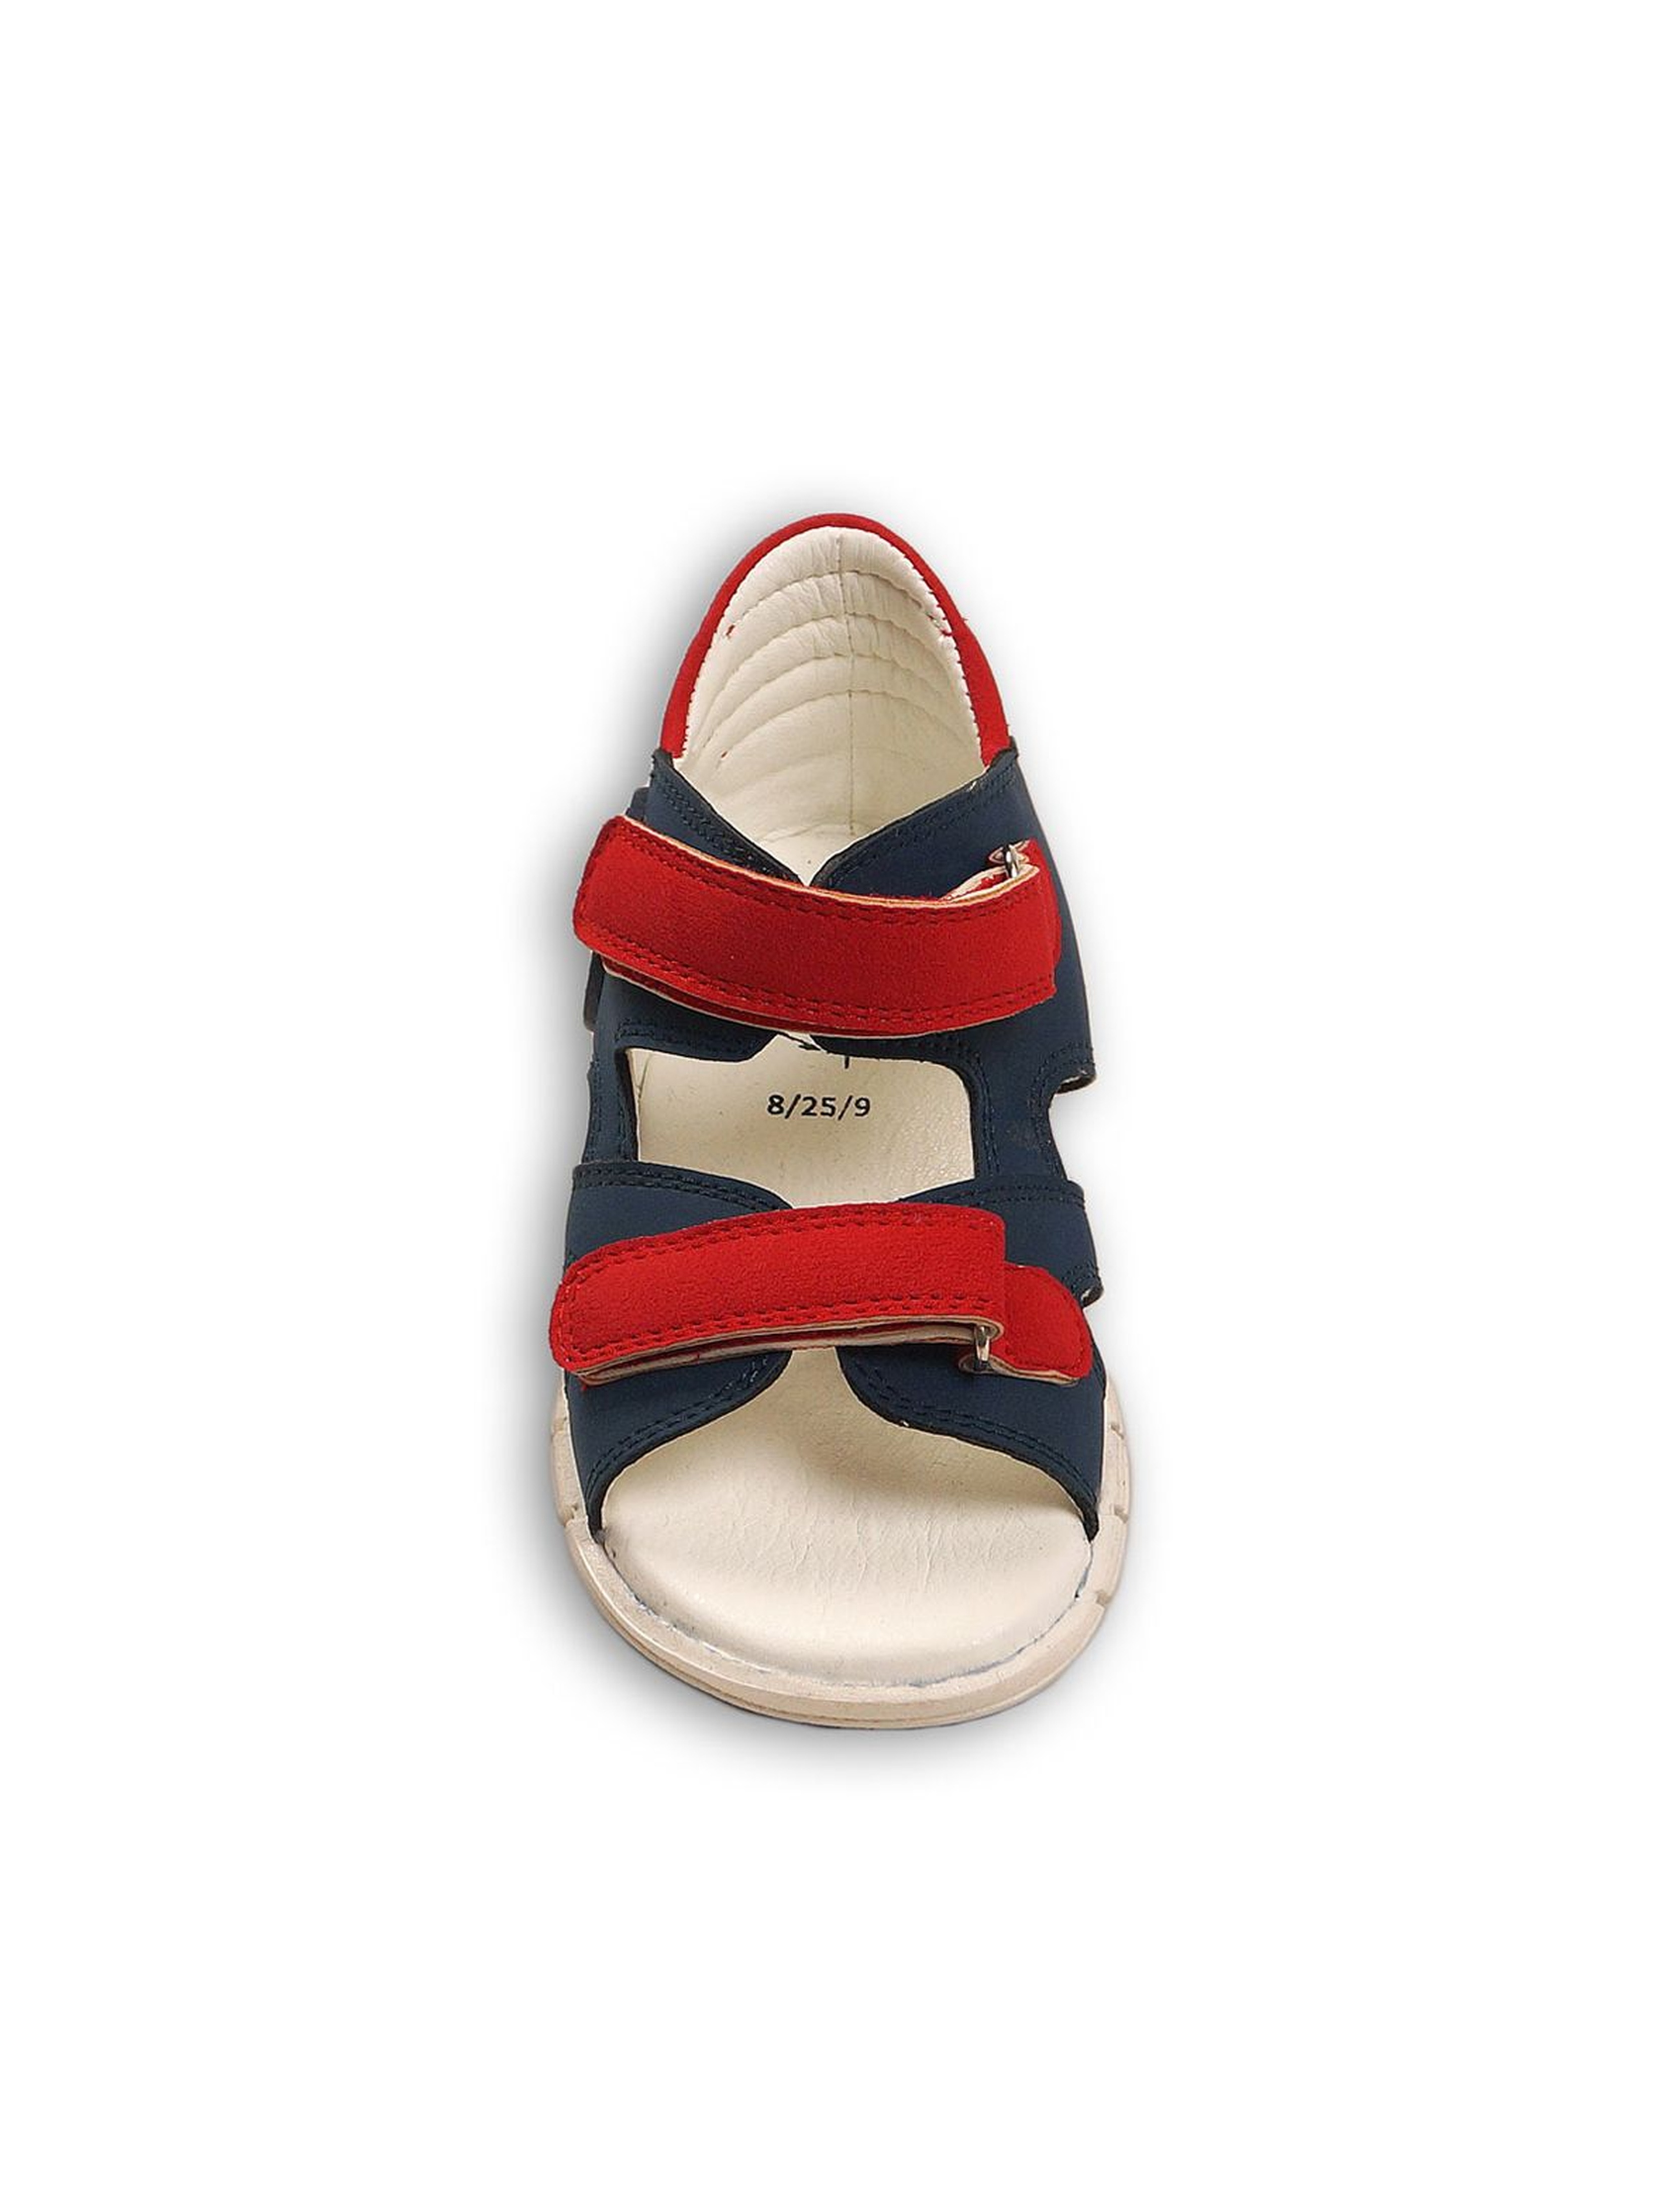 Granatowo-czerwone sandały dla chłopca- zapinane na rzep